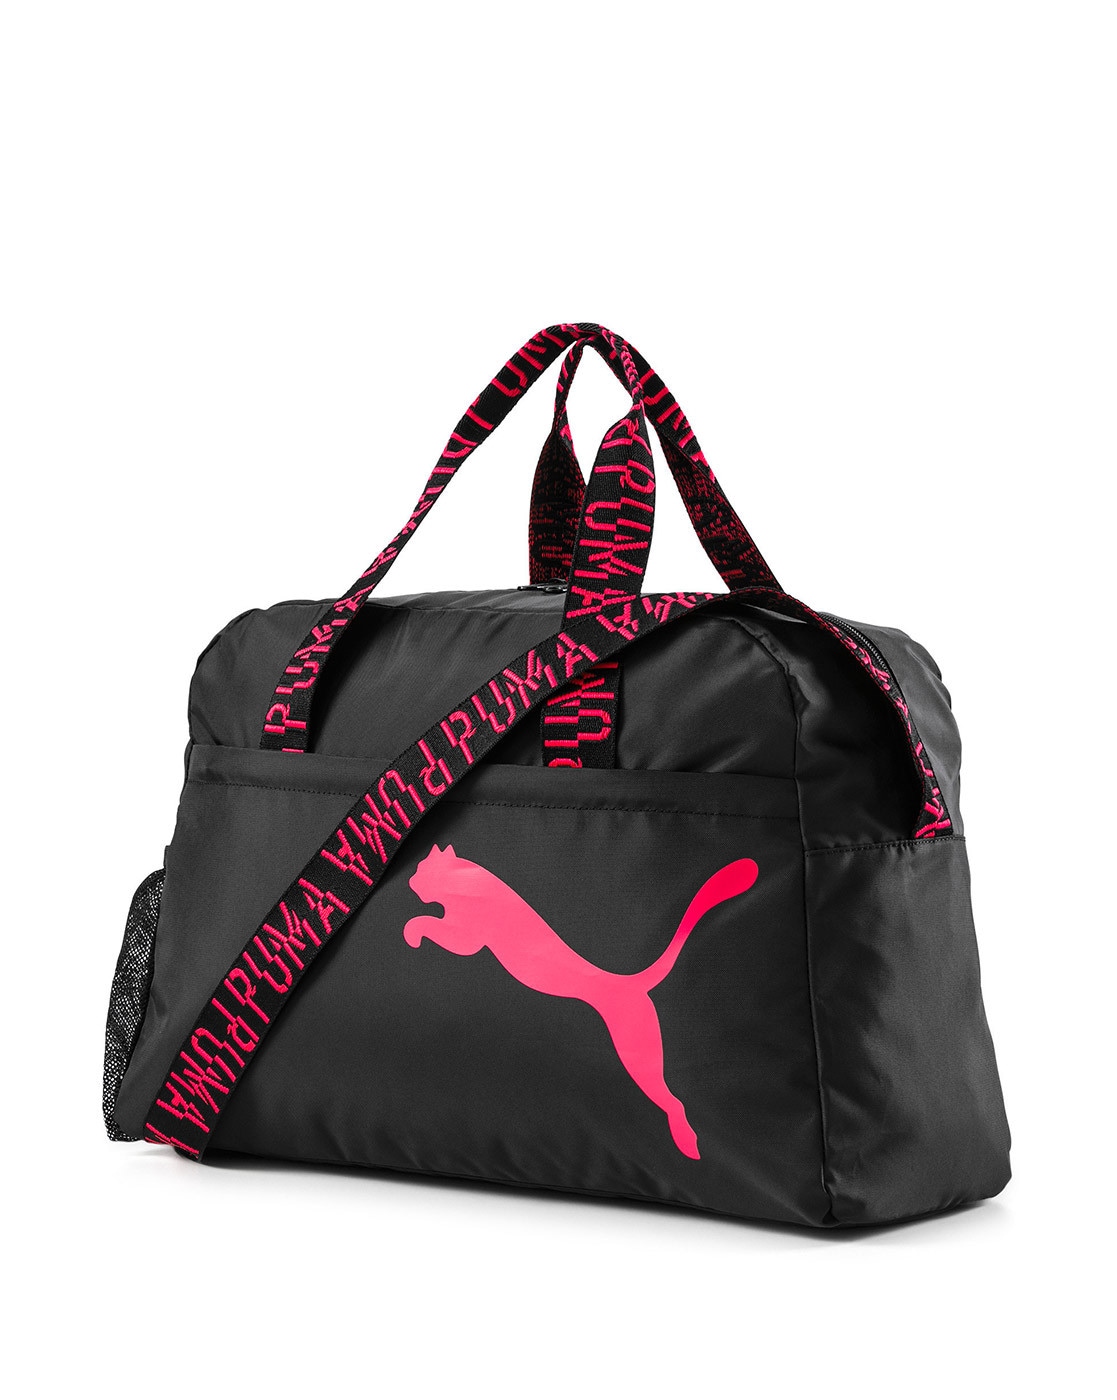 Ferrari Lifestyle Women's Handbag | Puma Black | PUMA Shoes | PUMA